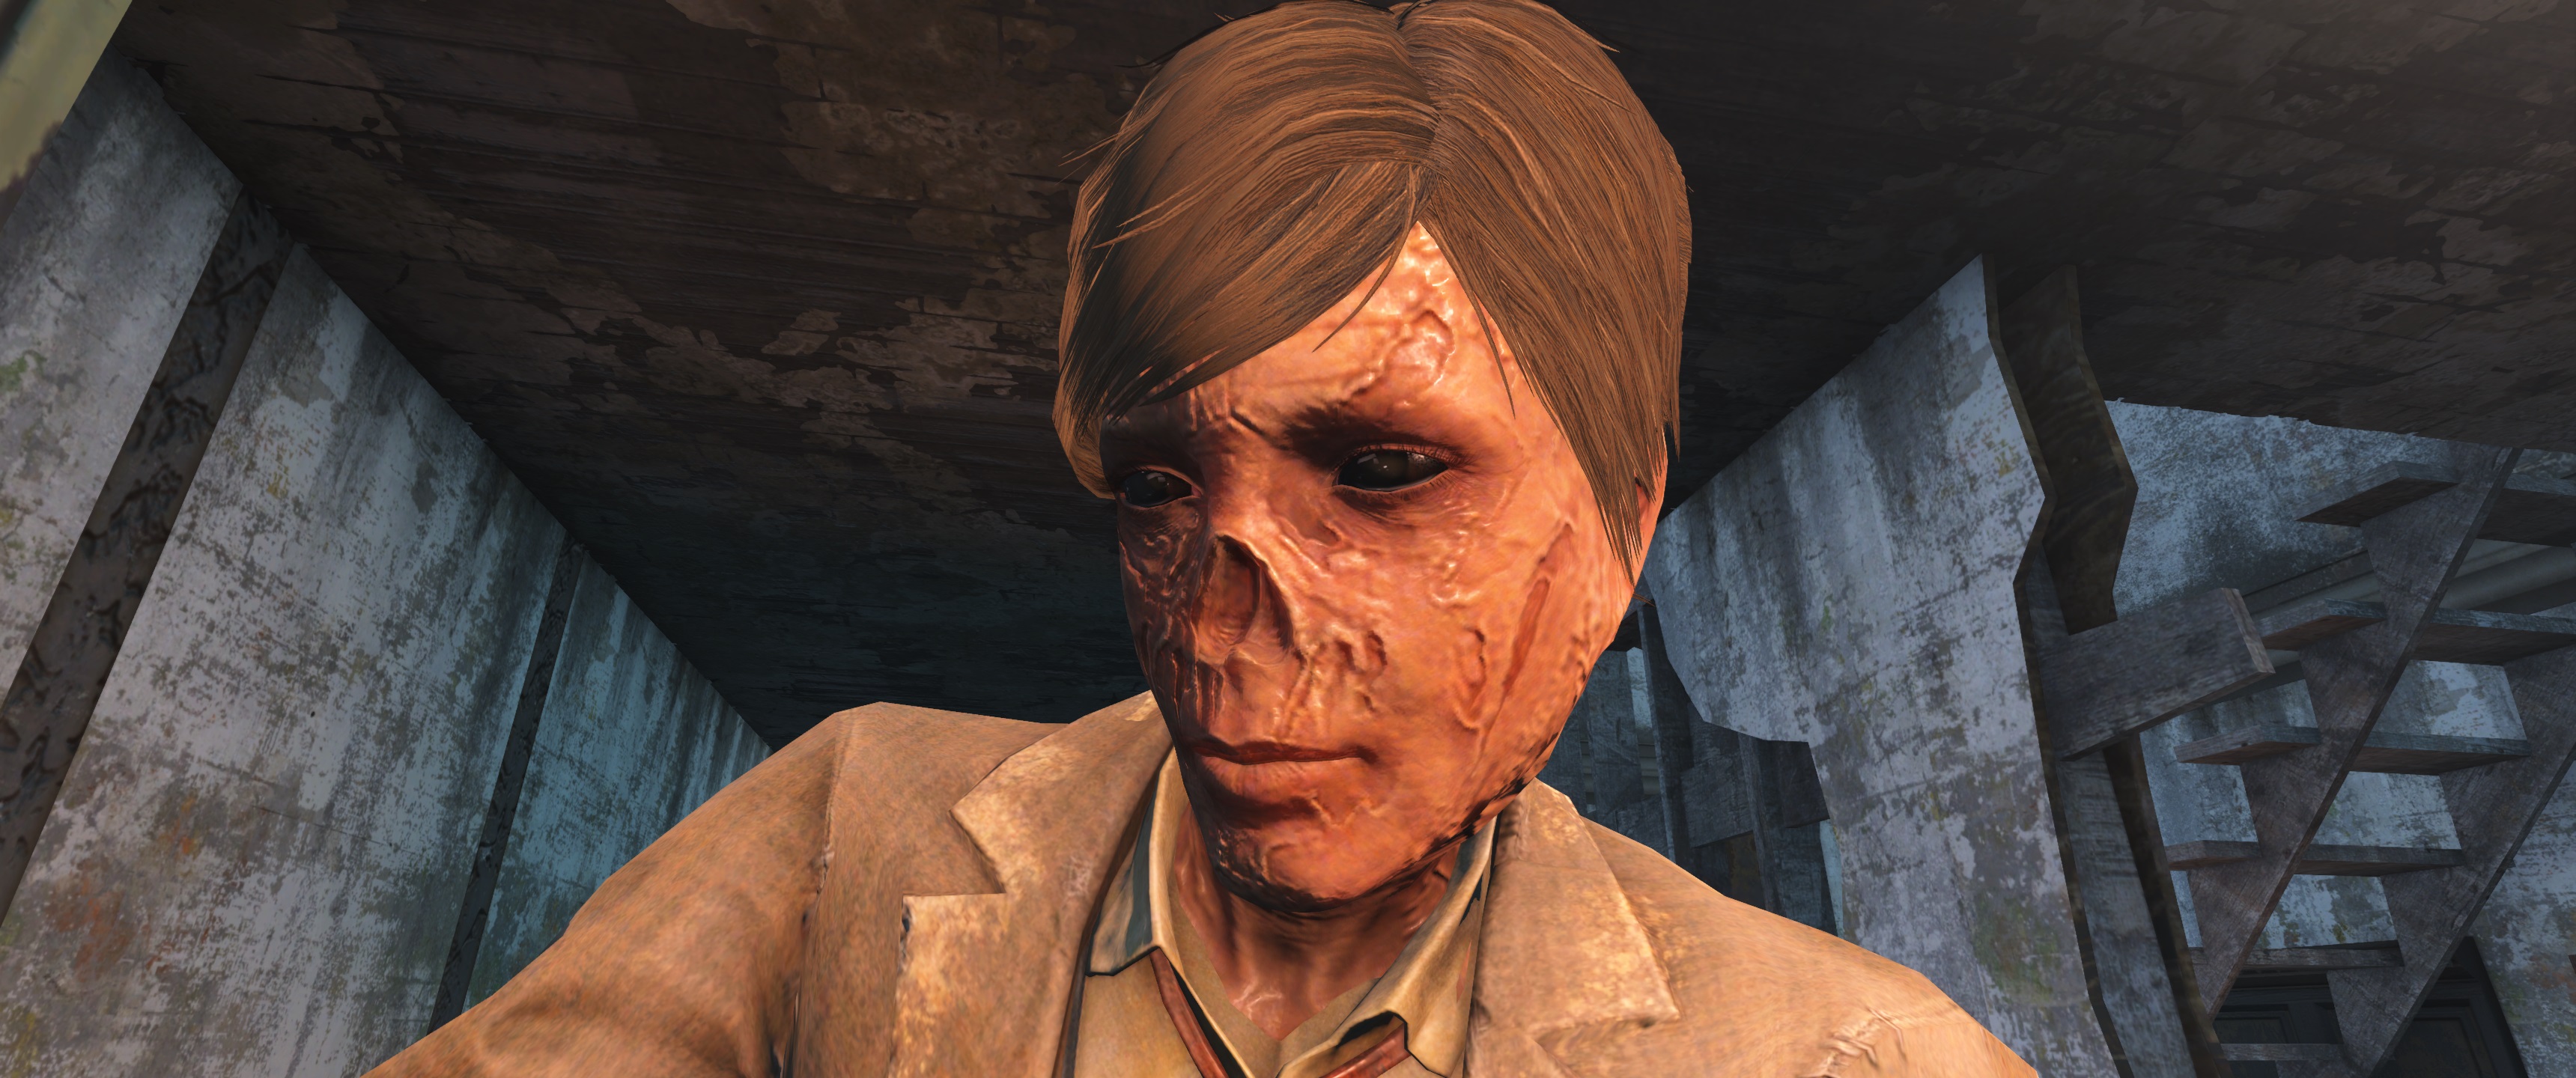 Fallout 4 бессмертие npc фото 1